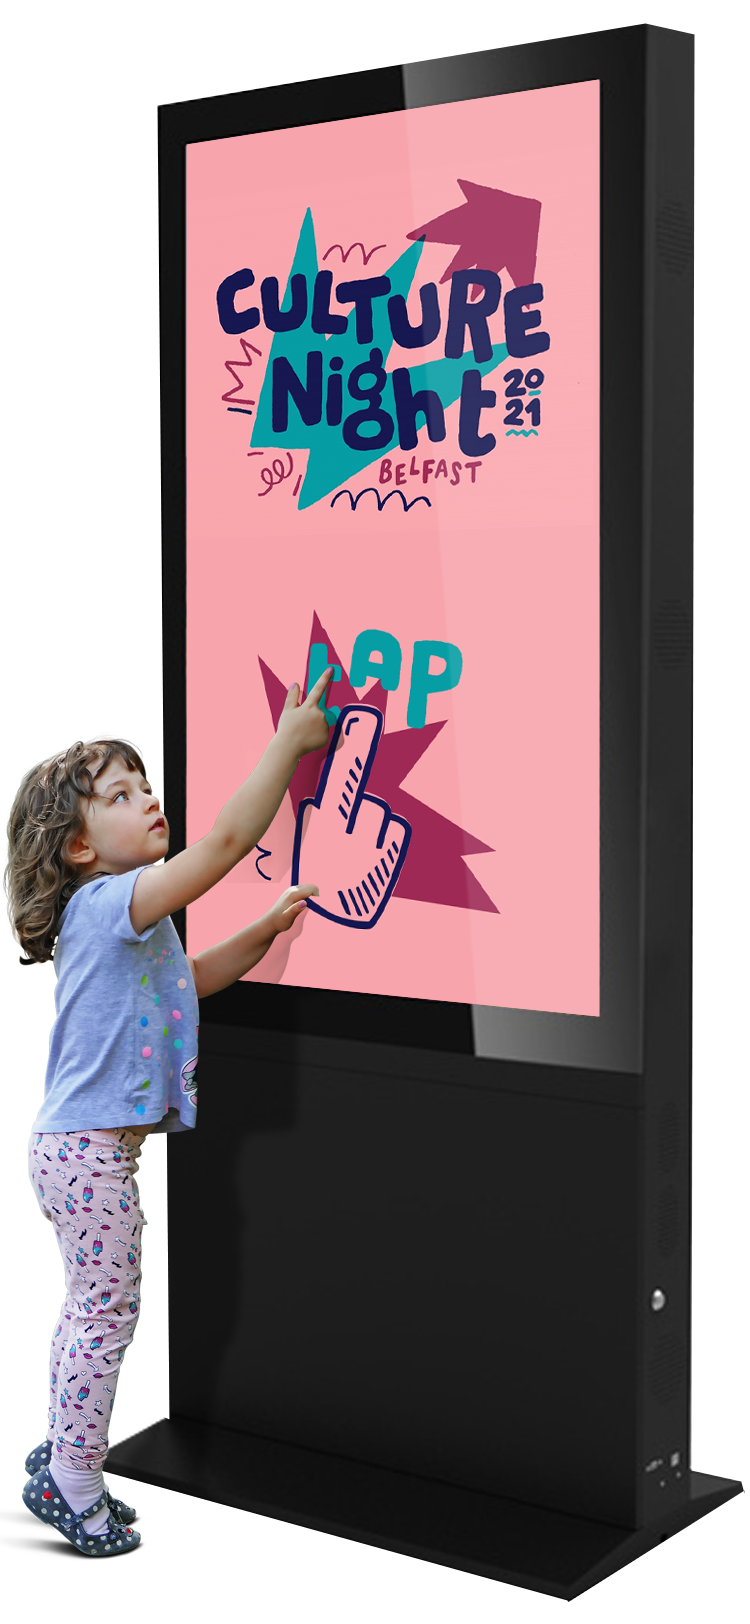 Freestanding touchscreen kiosk